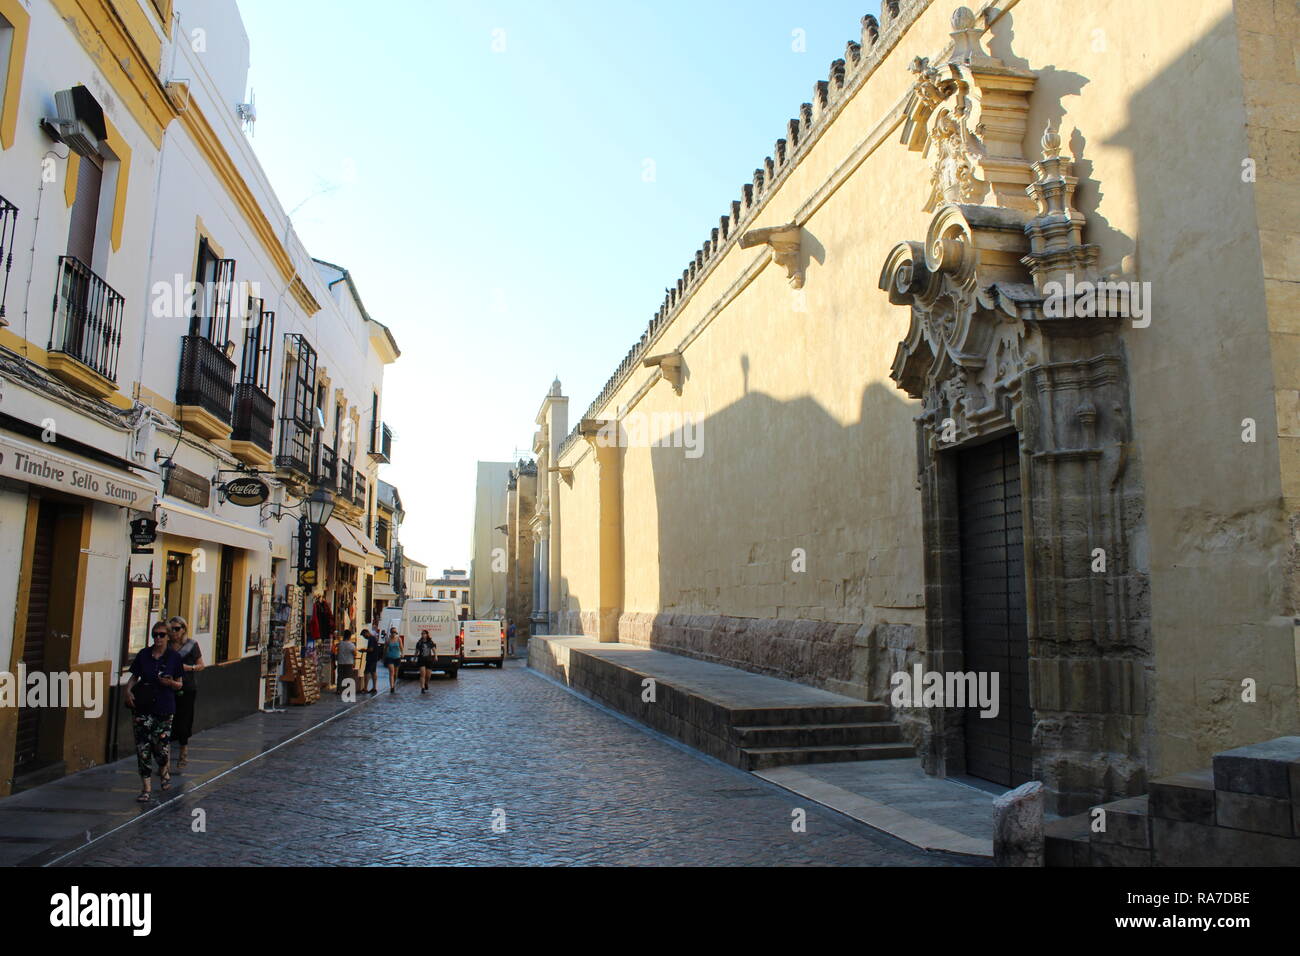 Eine Straße in der Nähe der Mezquita, Cordoba, Andalusien, Spanien, Spanien, im klassischen spanischen Stil und auf der anderen Seite eine Wand der Mezquita Stockfoto